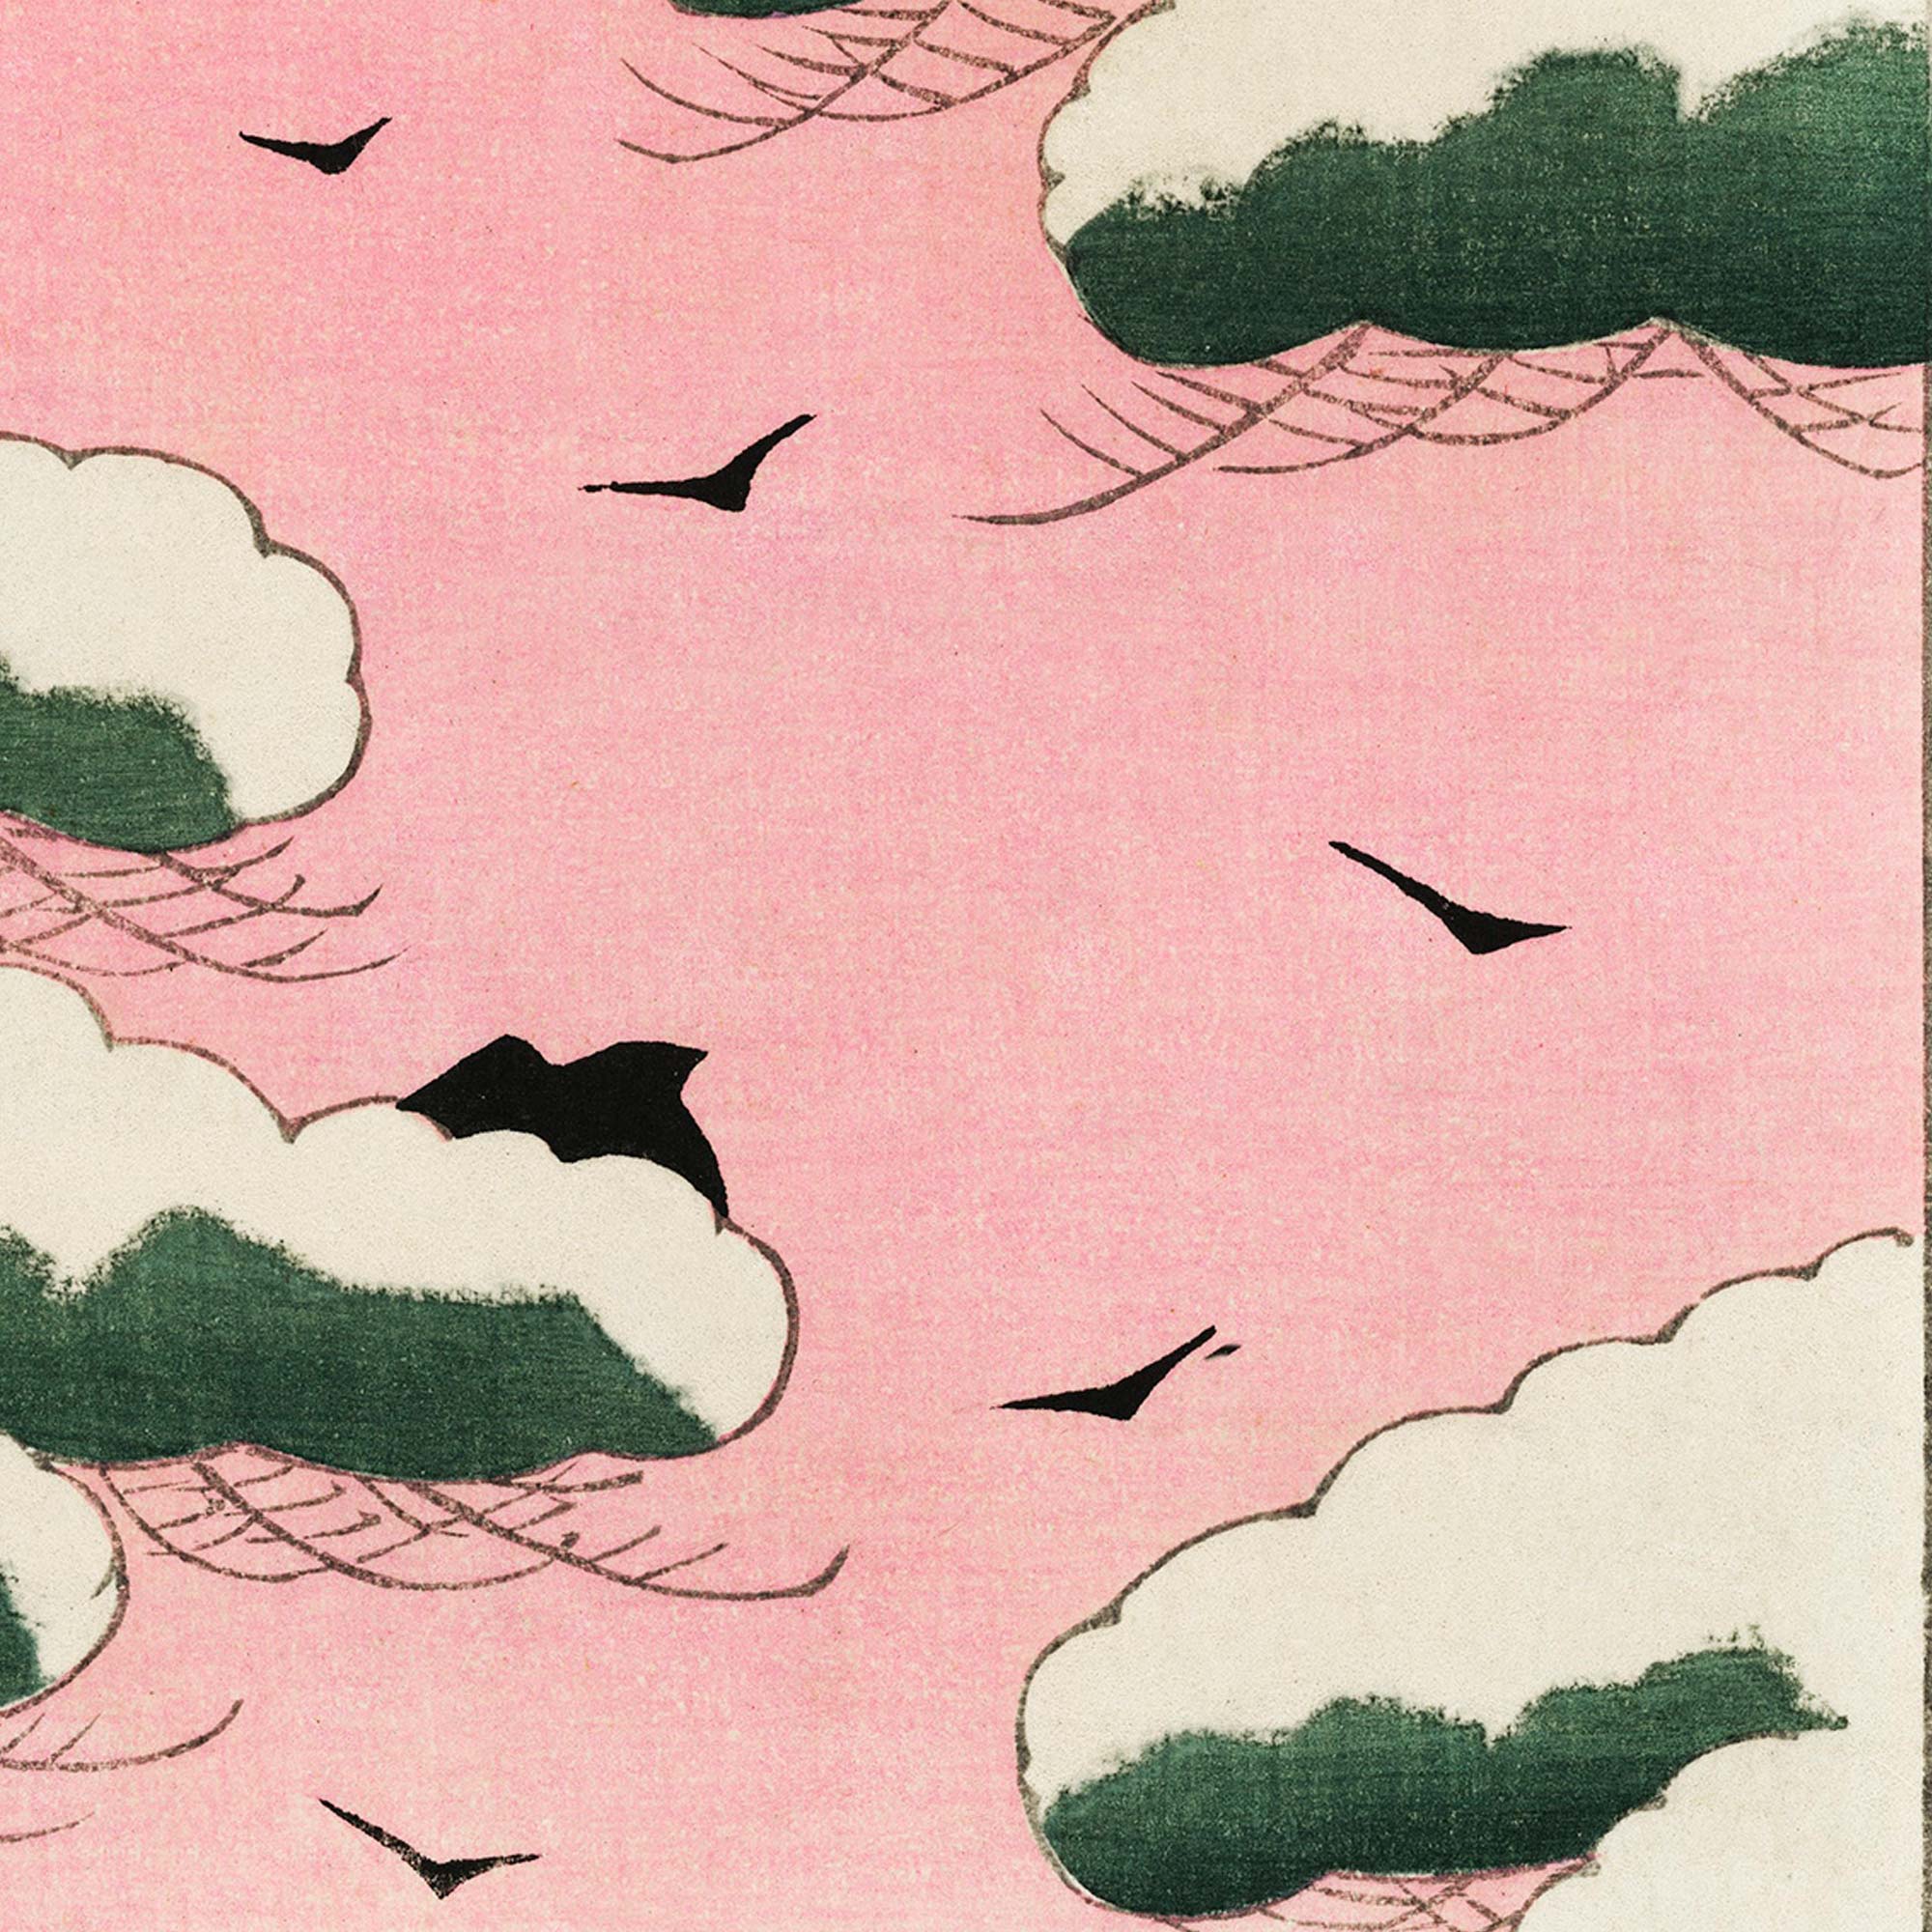 Pink sky illustration